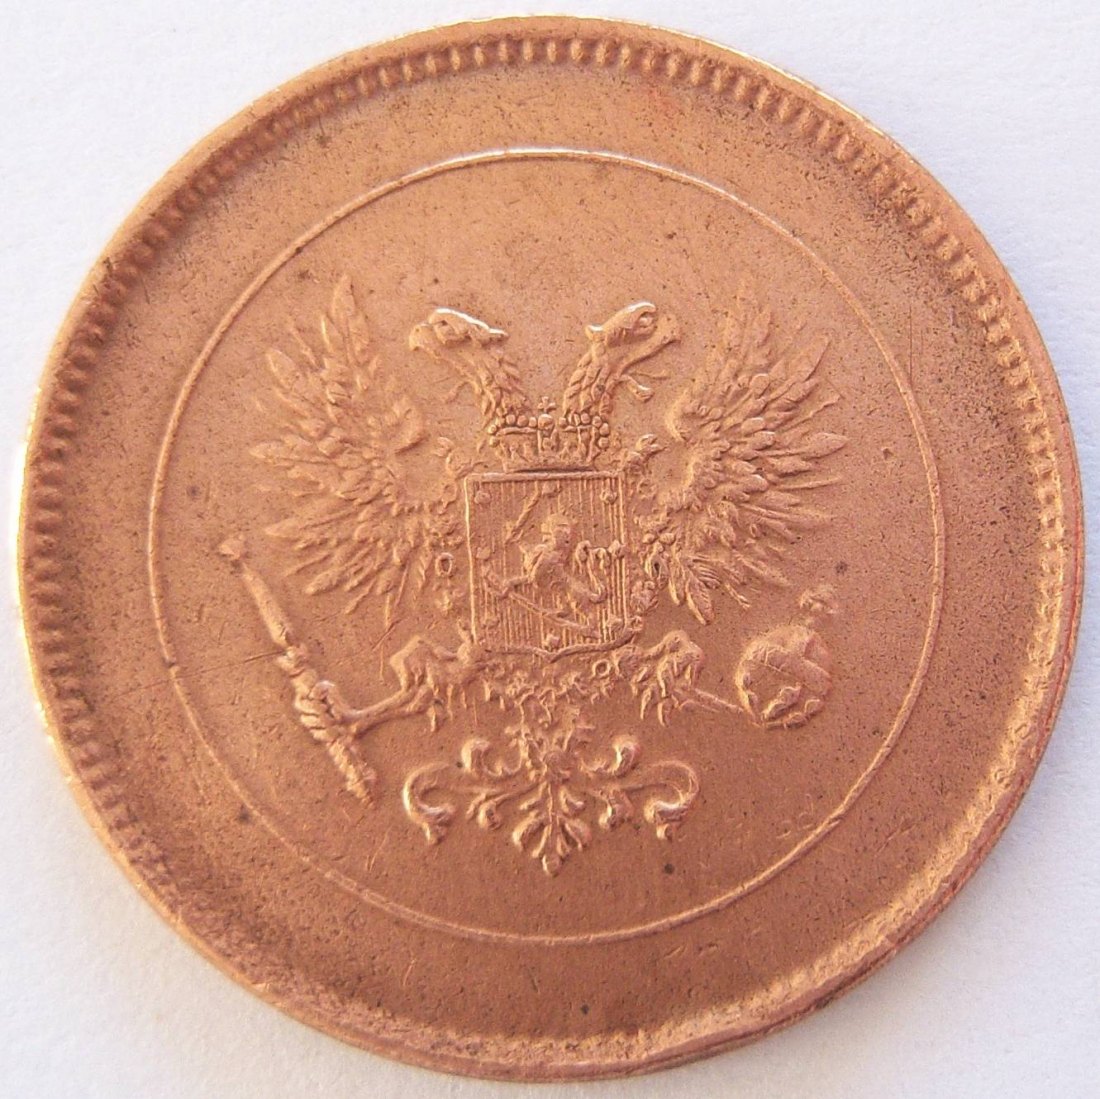  Finnland 5 Penniä 1917   